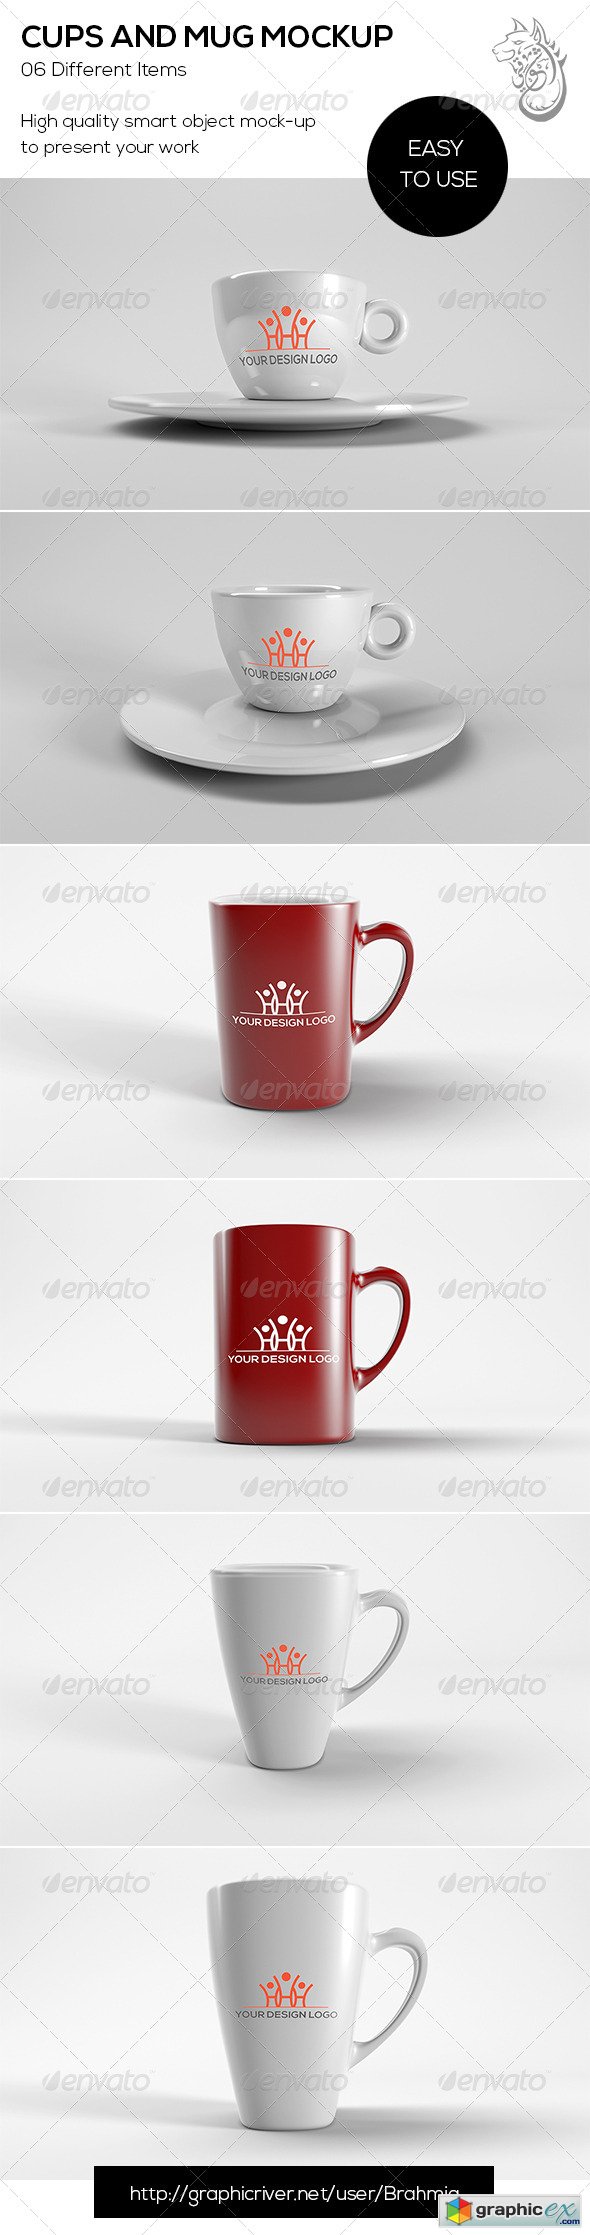 Cups And Mug Mockup